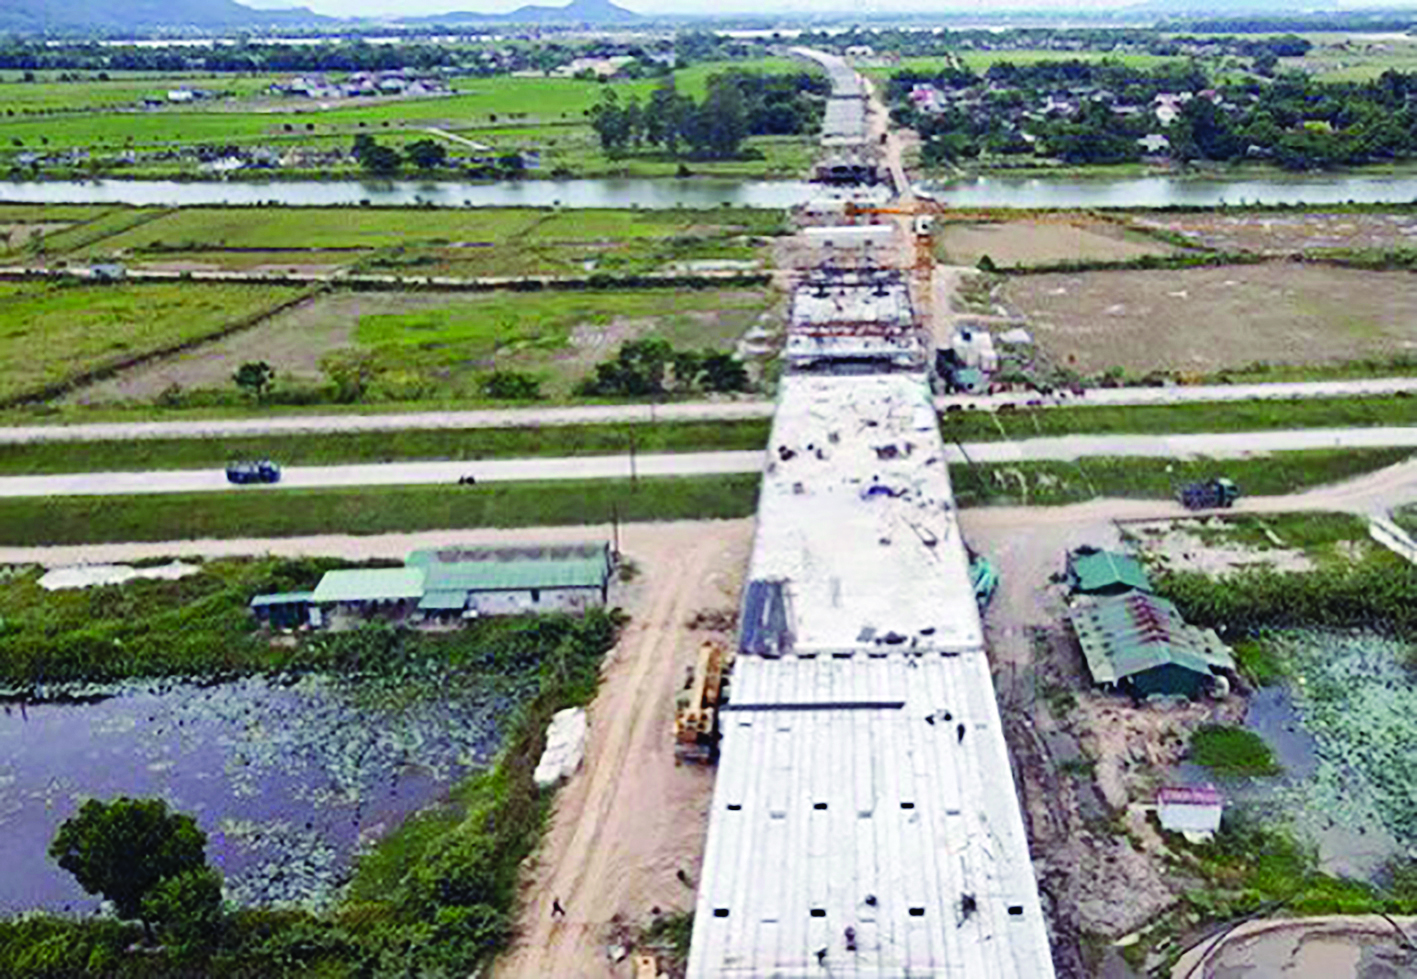  Cầu Hưng Đức vượt sông Lam nối 2 tỉnh Nghệ An và Hà Tĩnh trên tuyến cao tốc Bắc - Nam đang được triển khai xây dựng. Ảnh Báo Hà Tĩnh